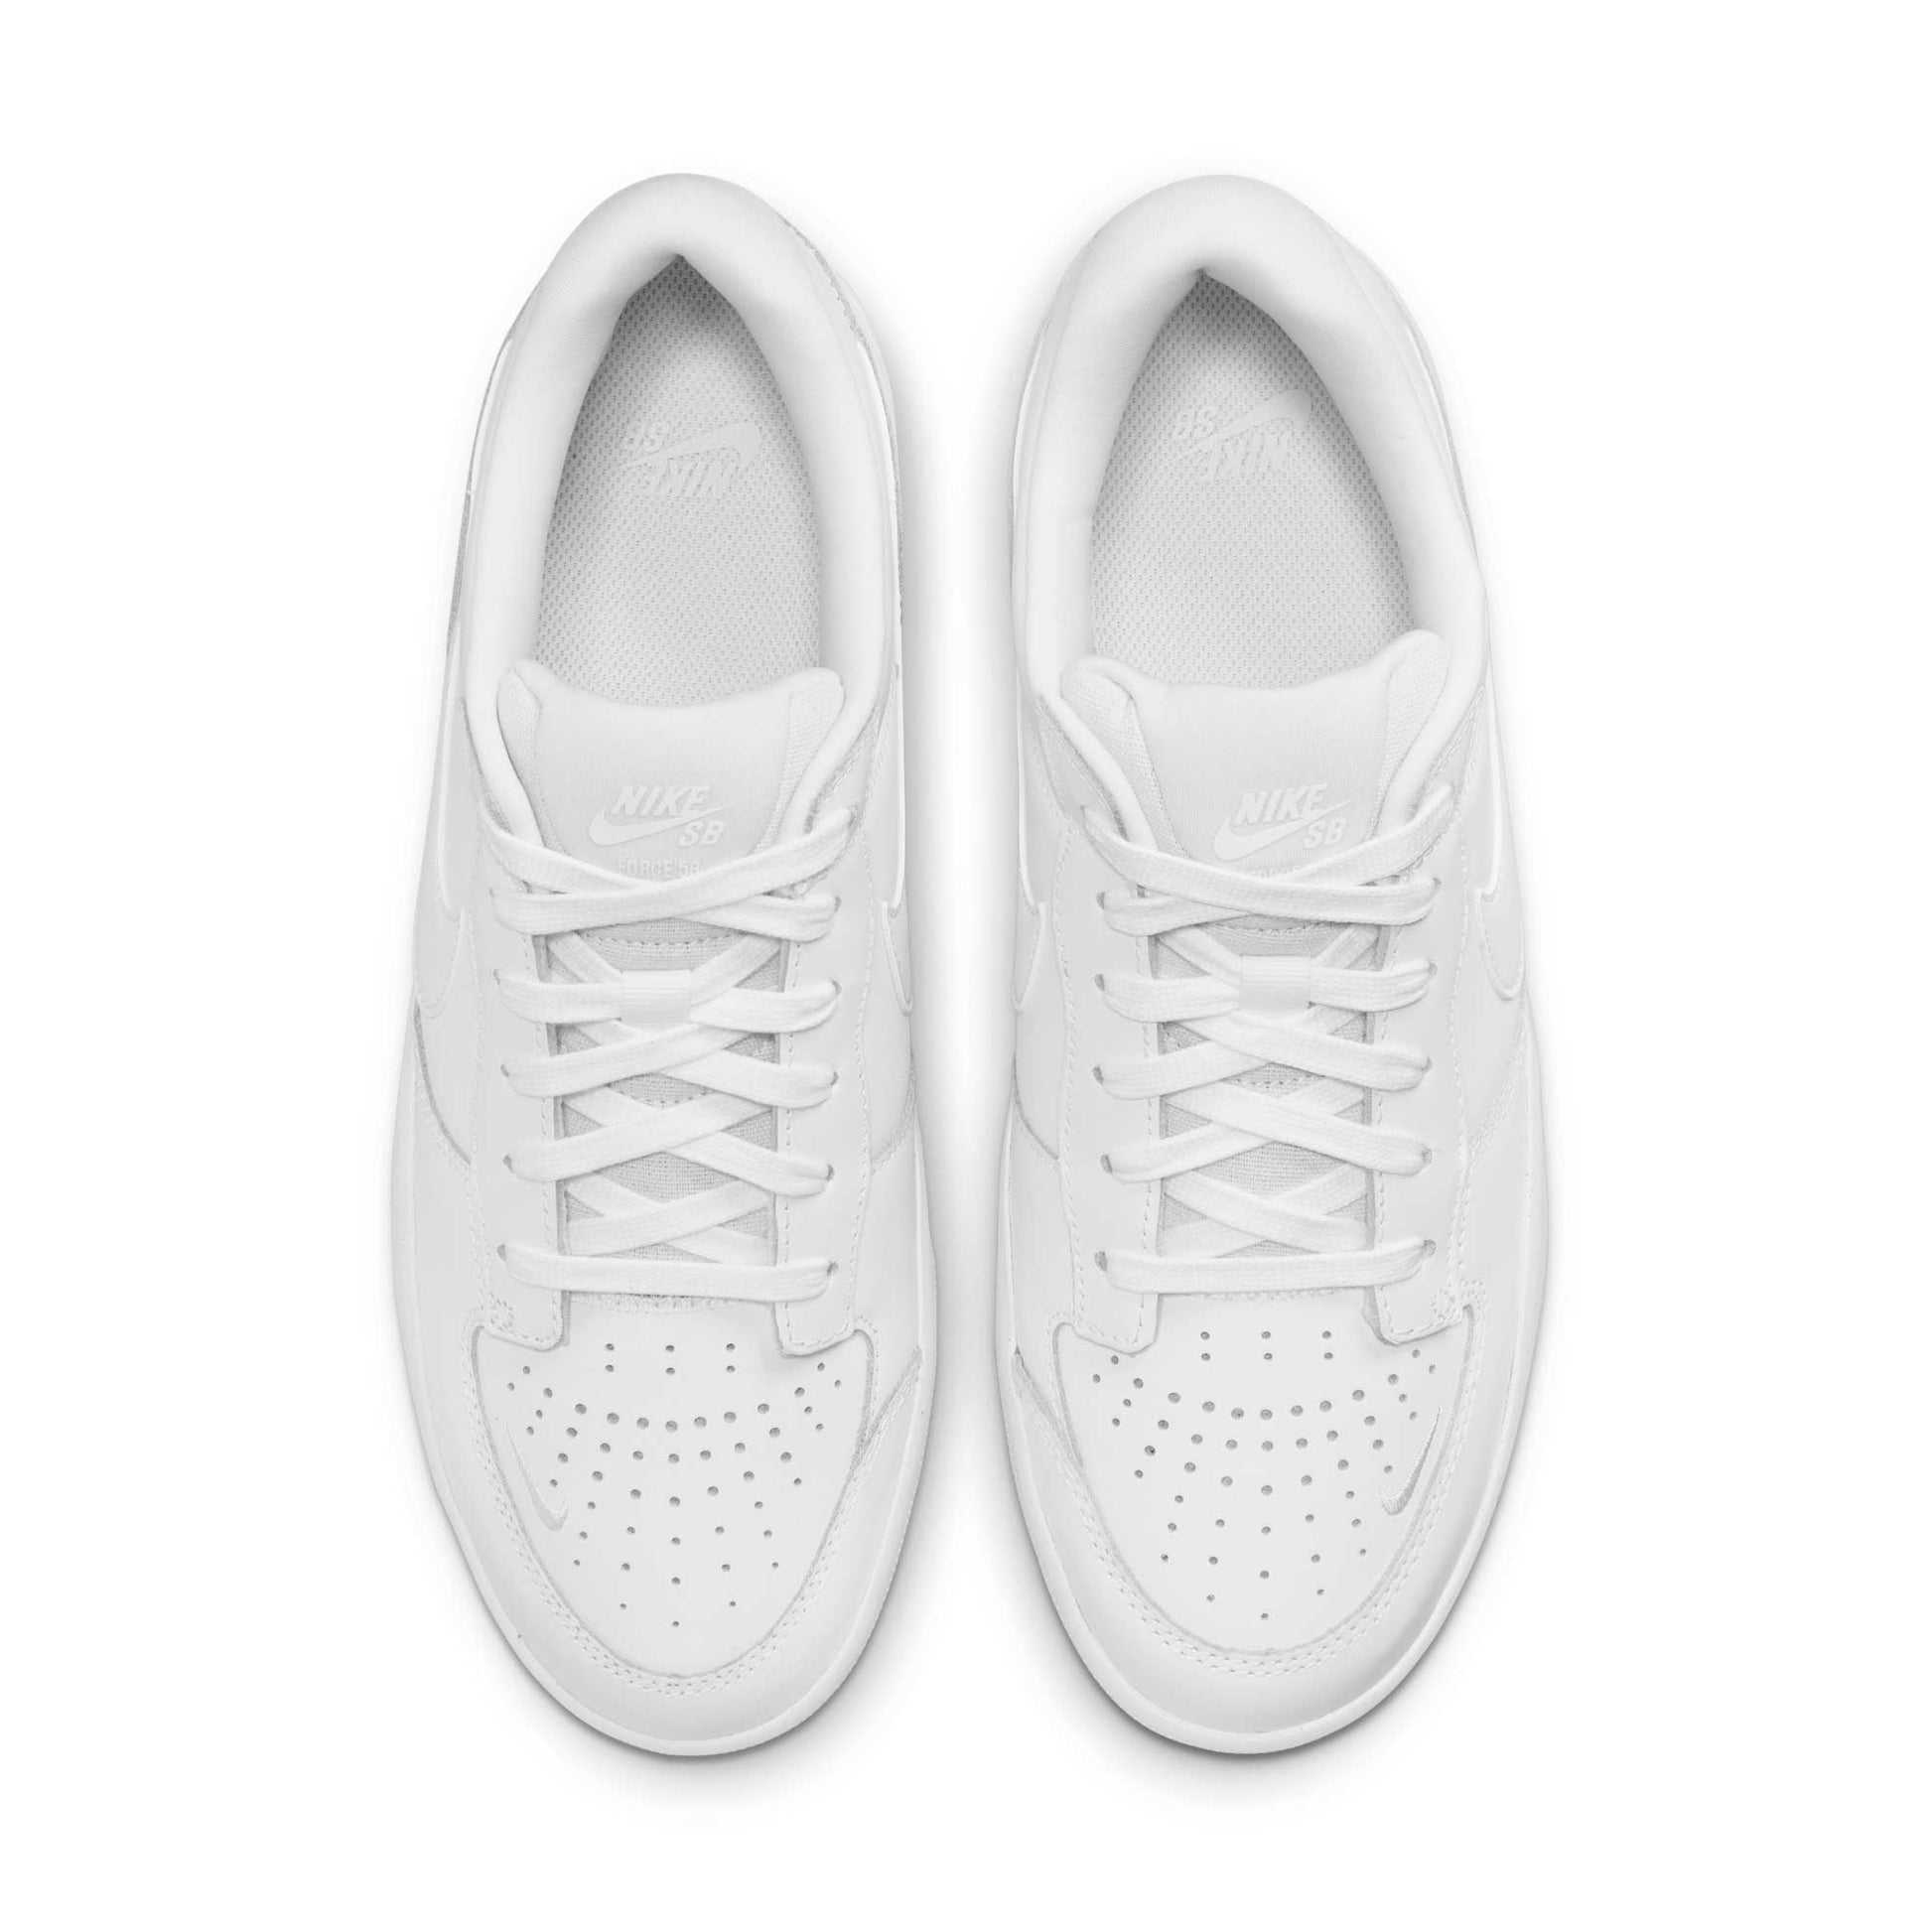 Nike SB Force 58 Premium, white/white-white-white - Tiki Room Skateboards - 4